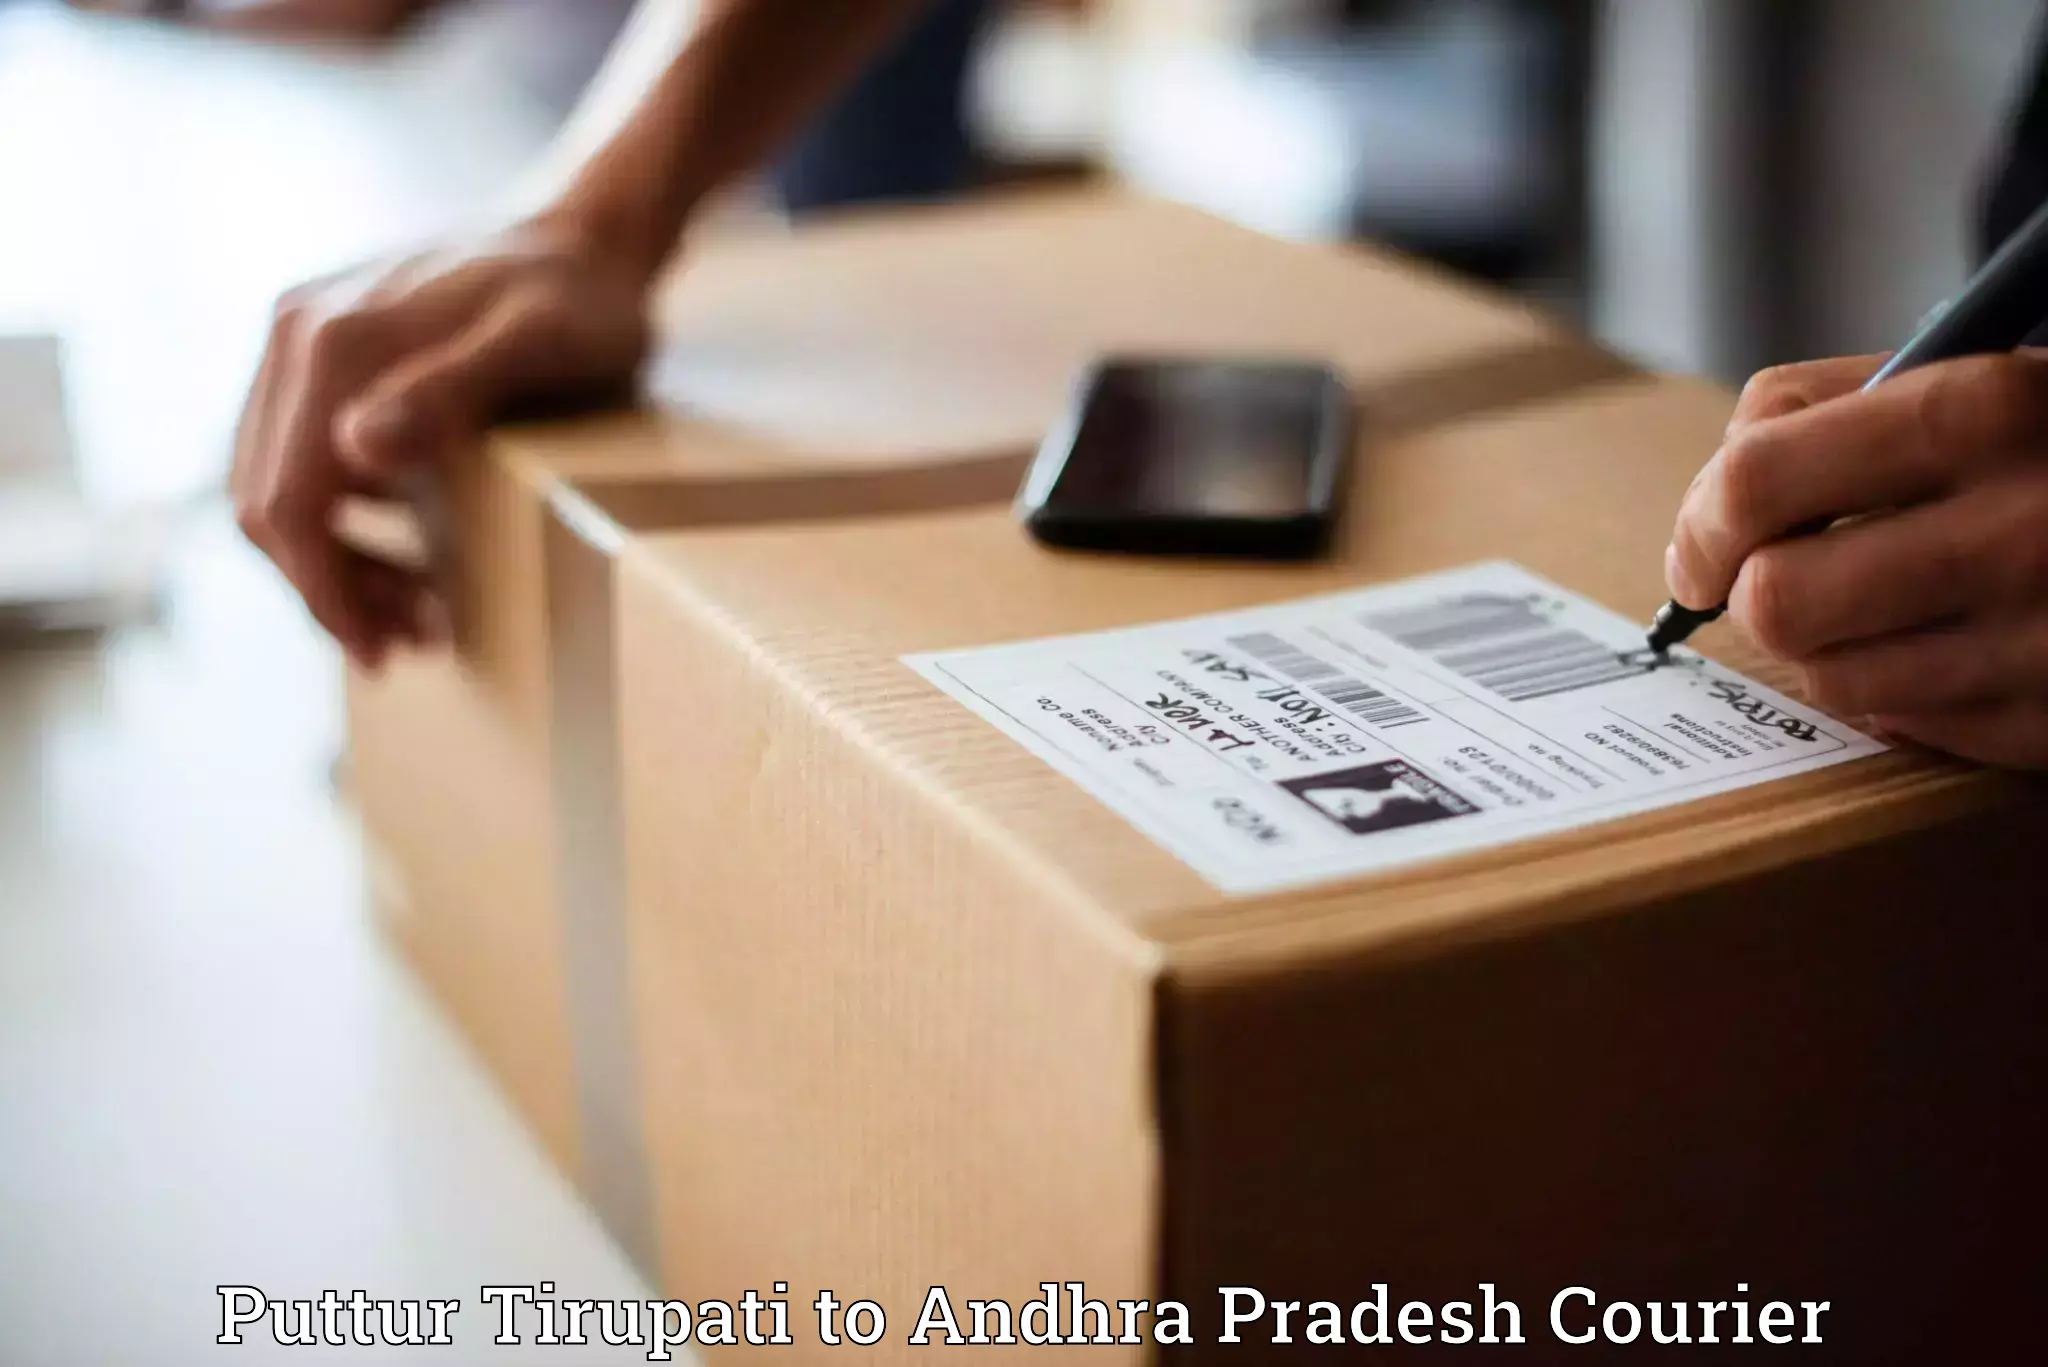 Rural area delivery Puttur Tirupati to Andhra Pradesh